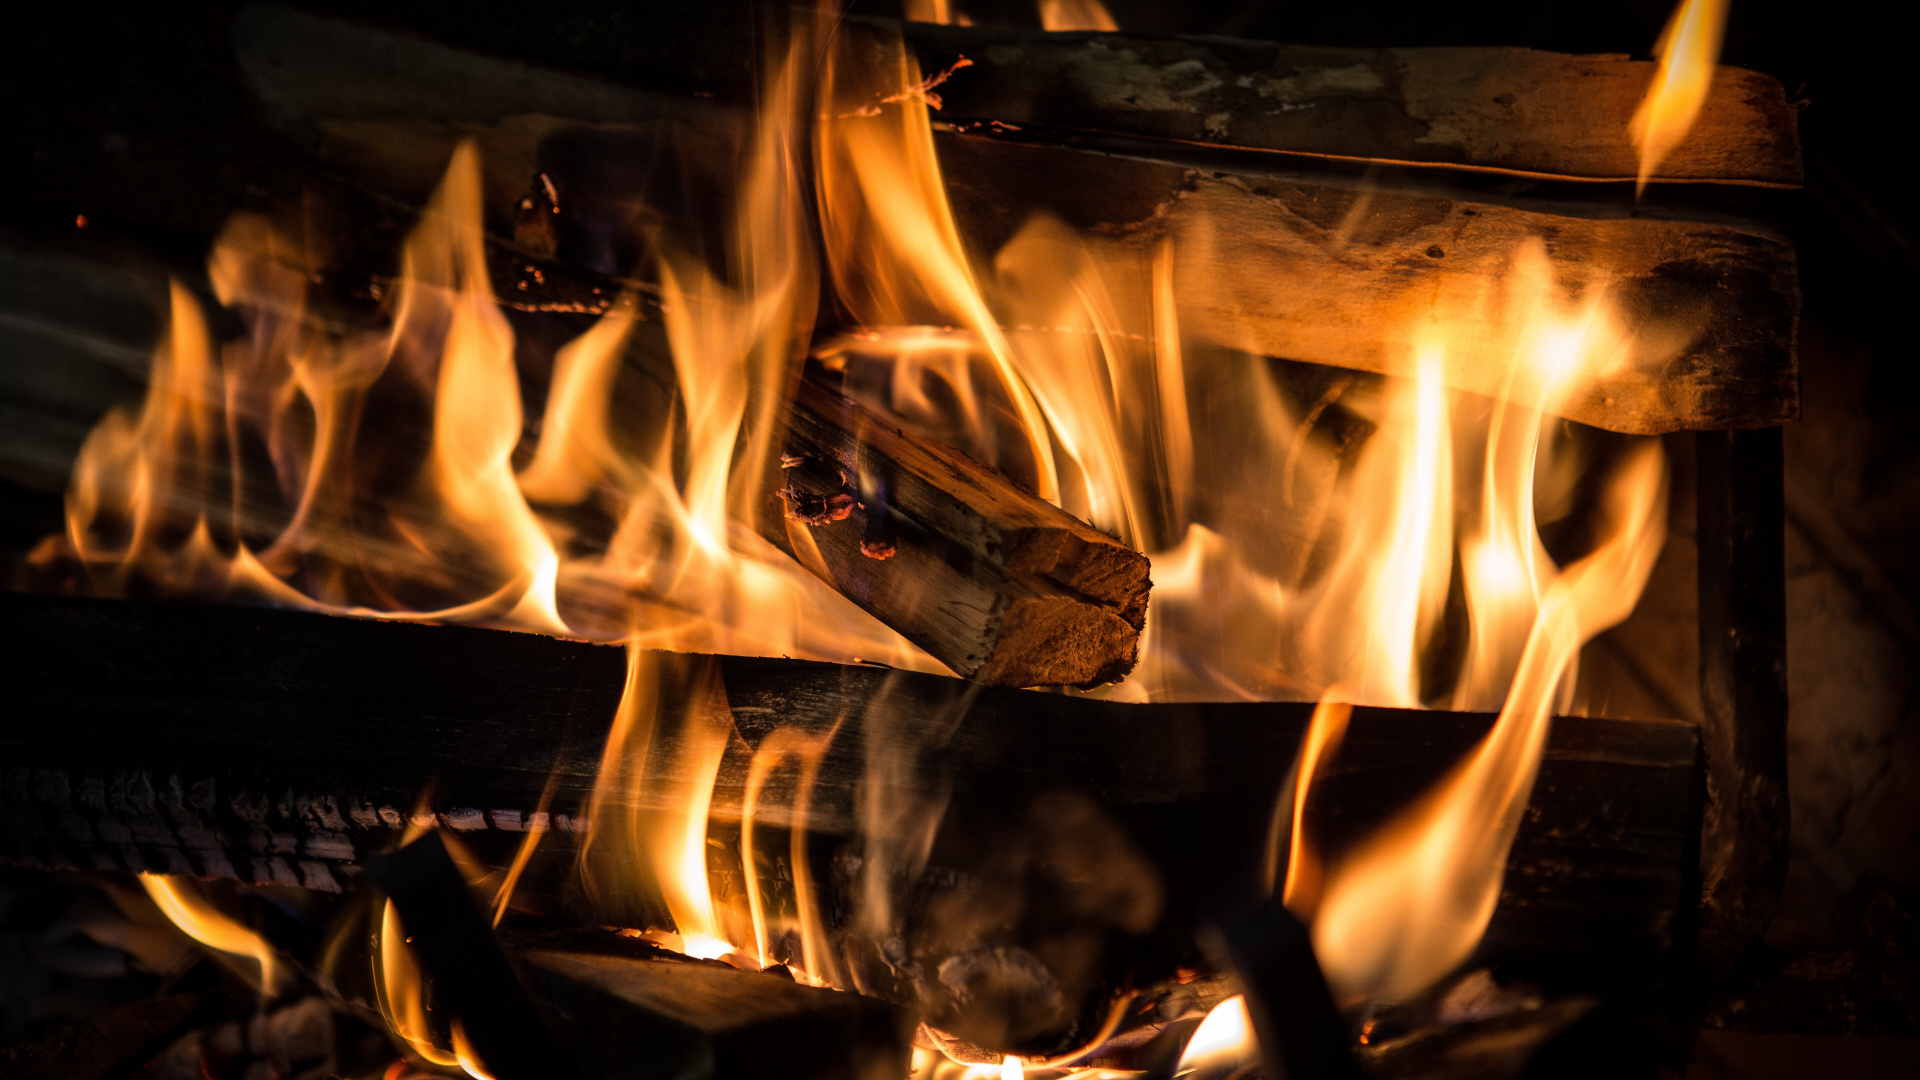 火焰, 炉子, 热, 篝火, 壁炉 壁纸 1920x1080 允许